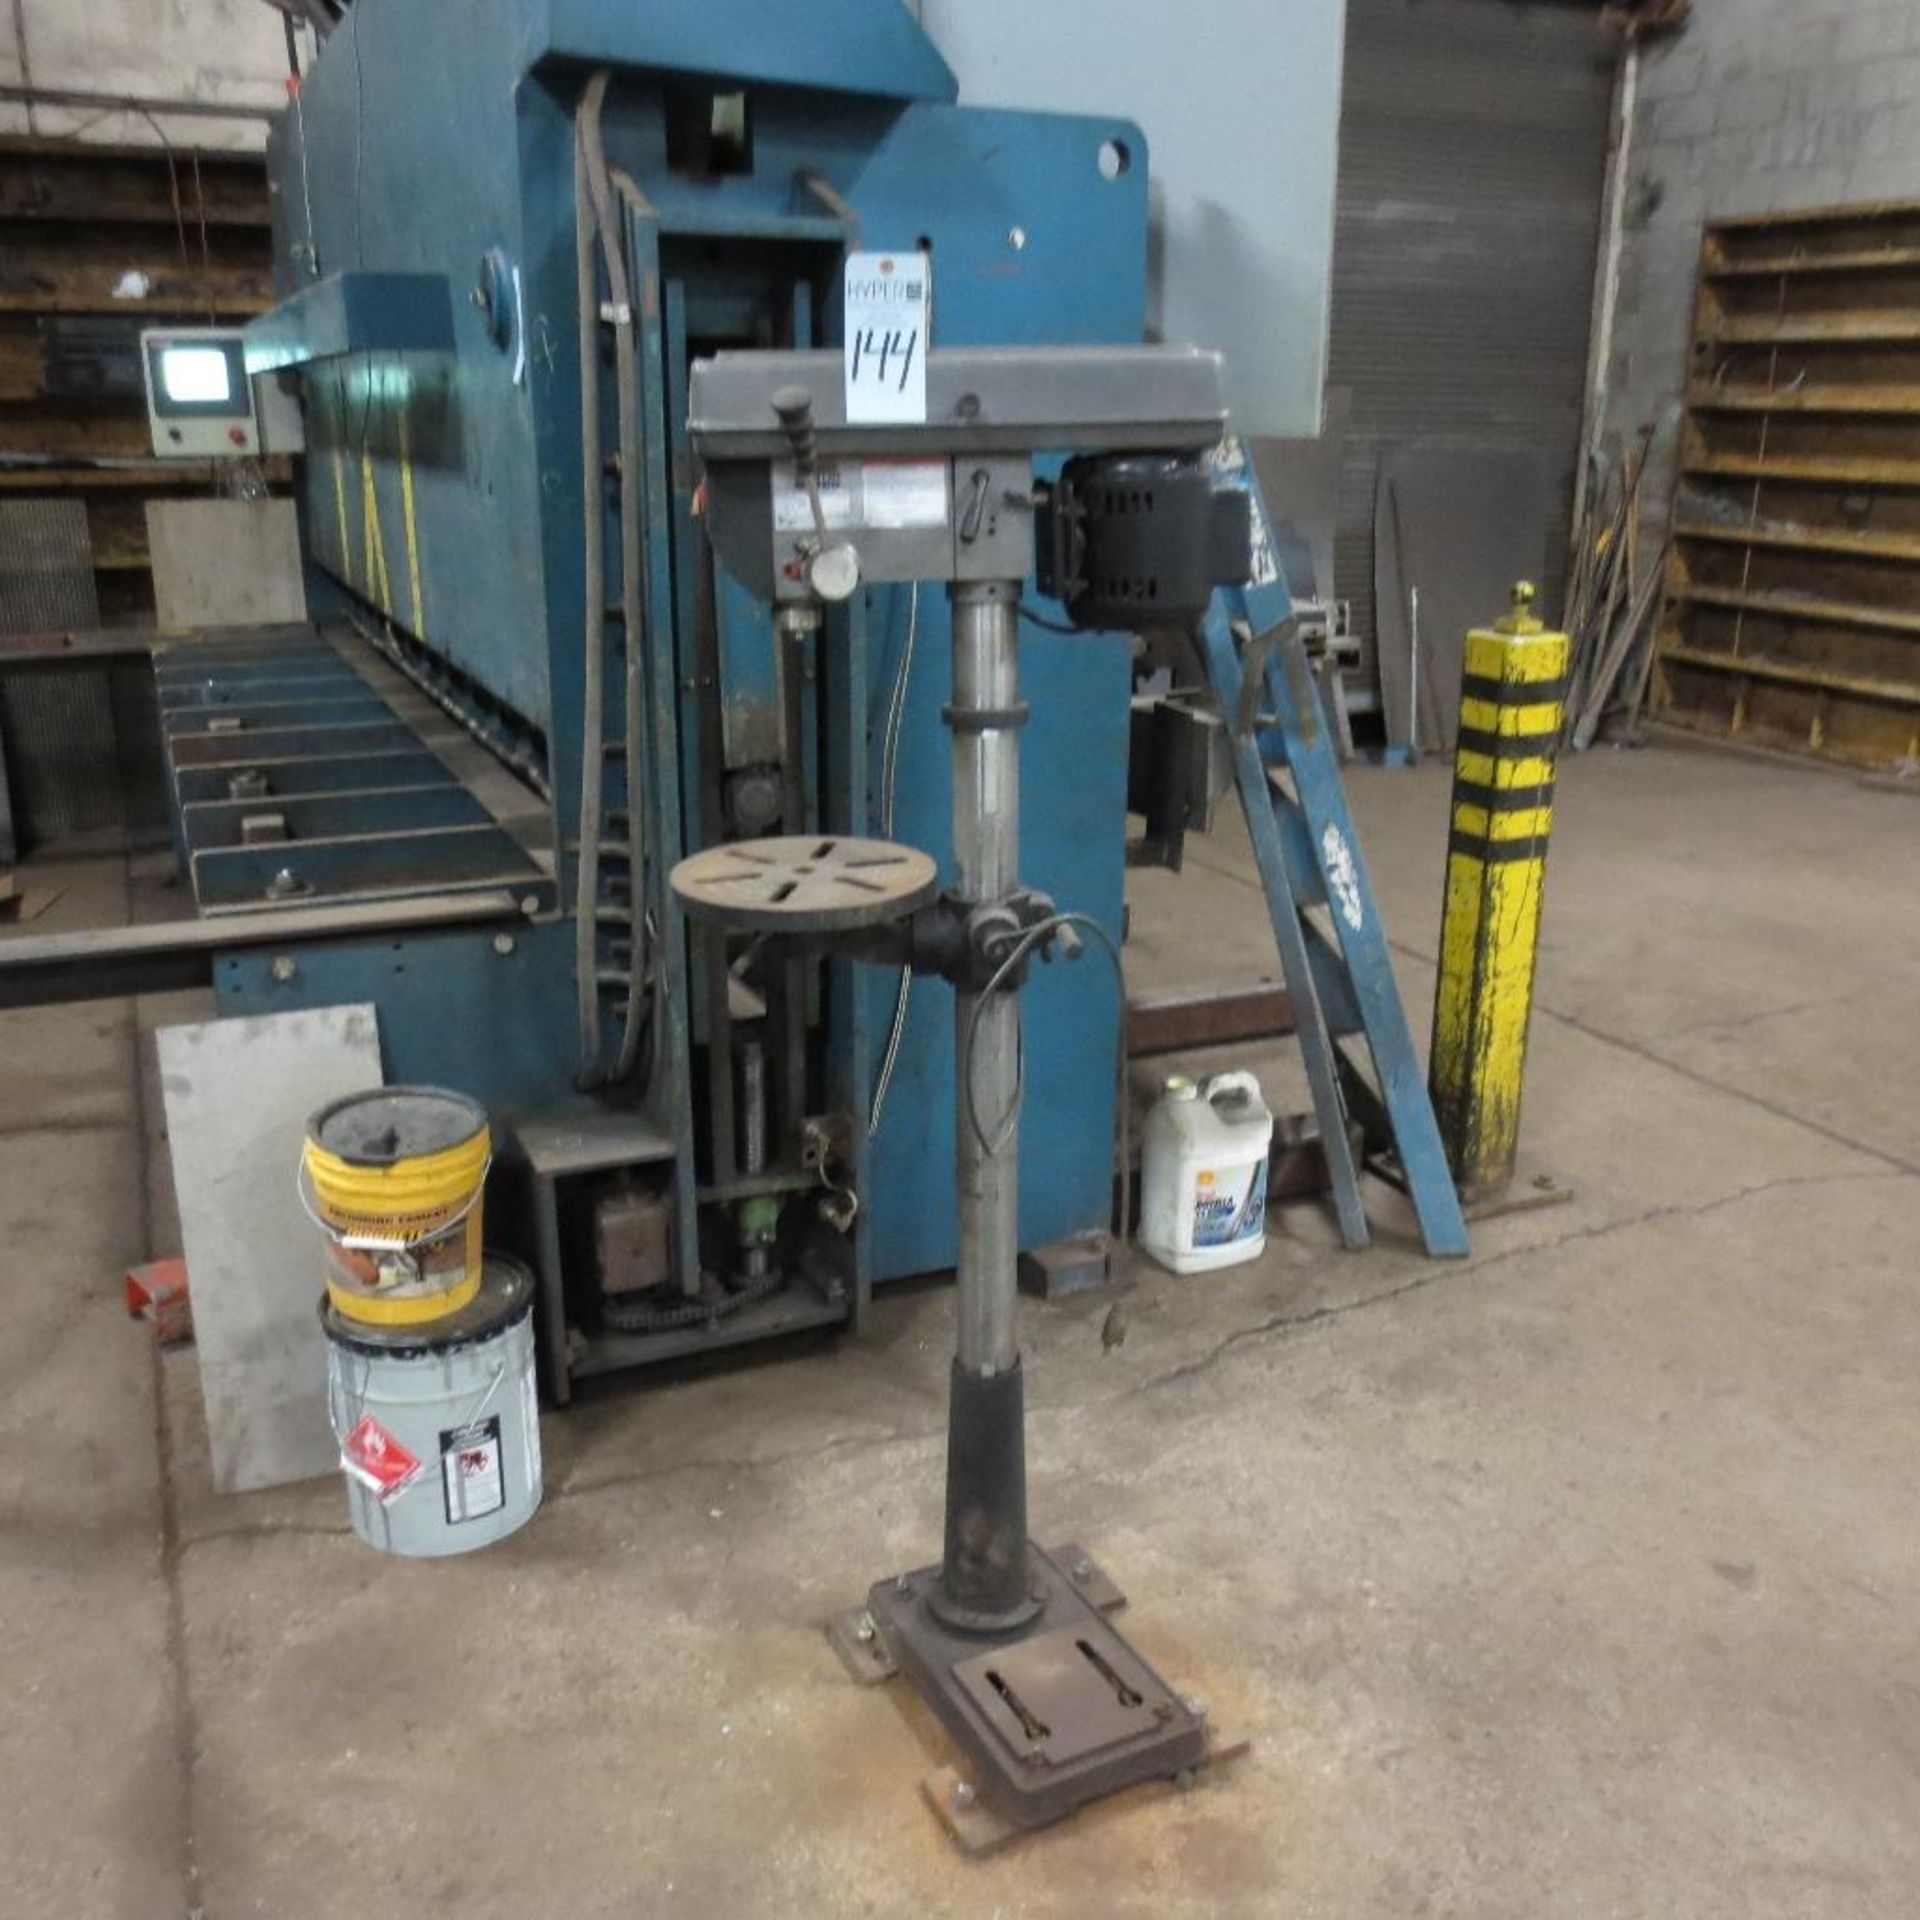 Central 16 Speed Floor Drill Press, 120V